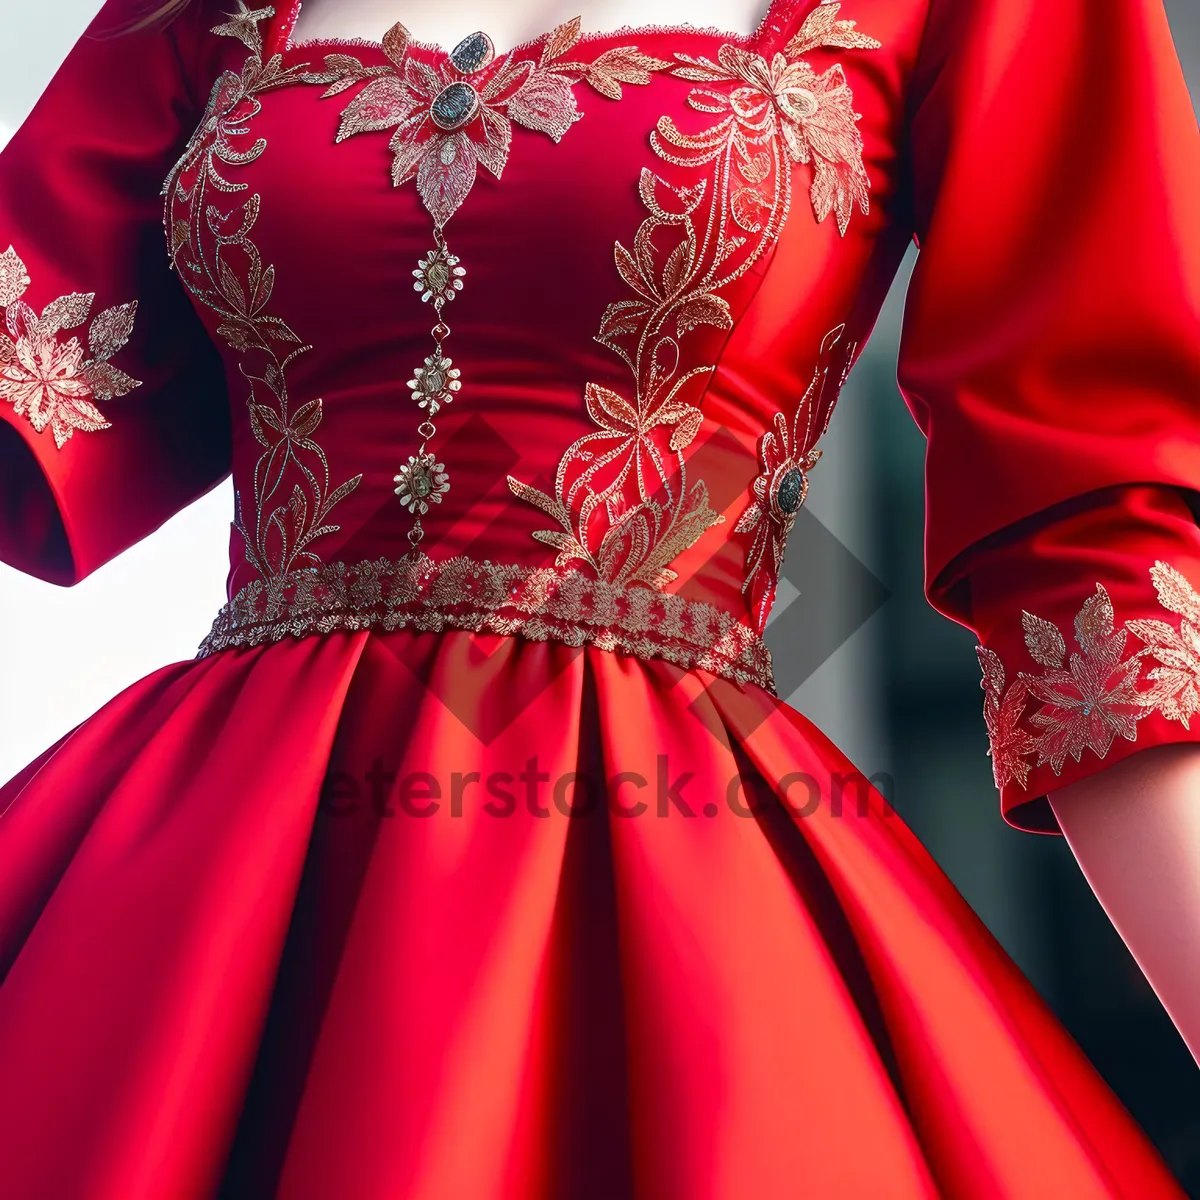 Picture of Elegant Brunette Posing in Glamorous Satin Dress